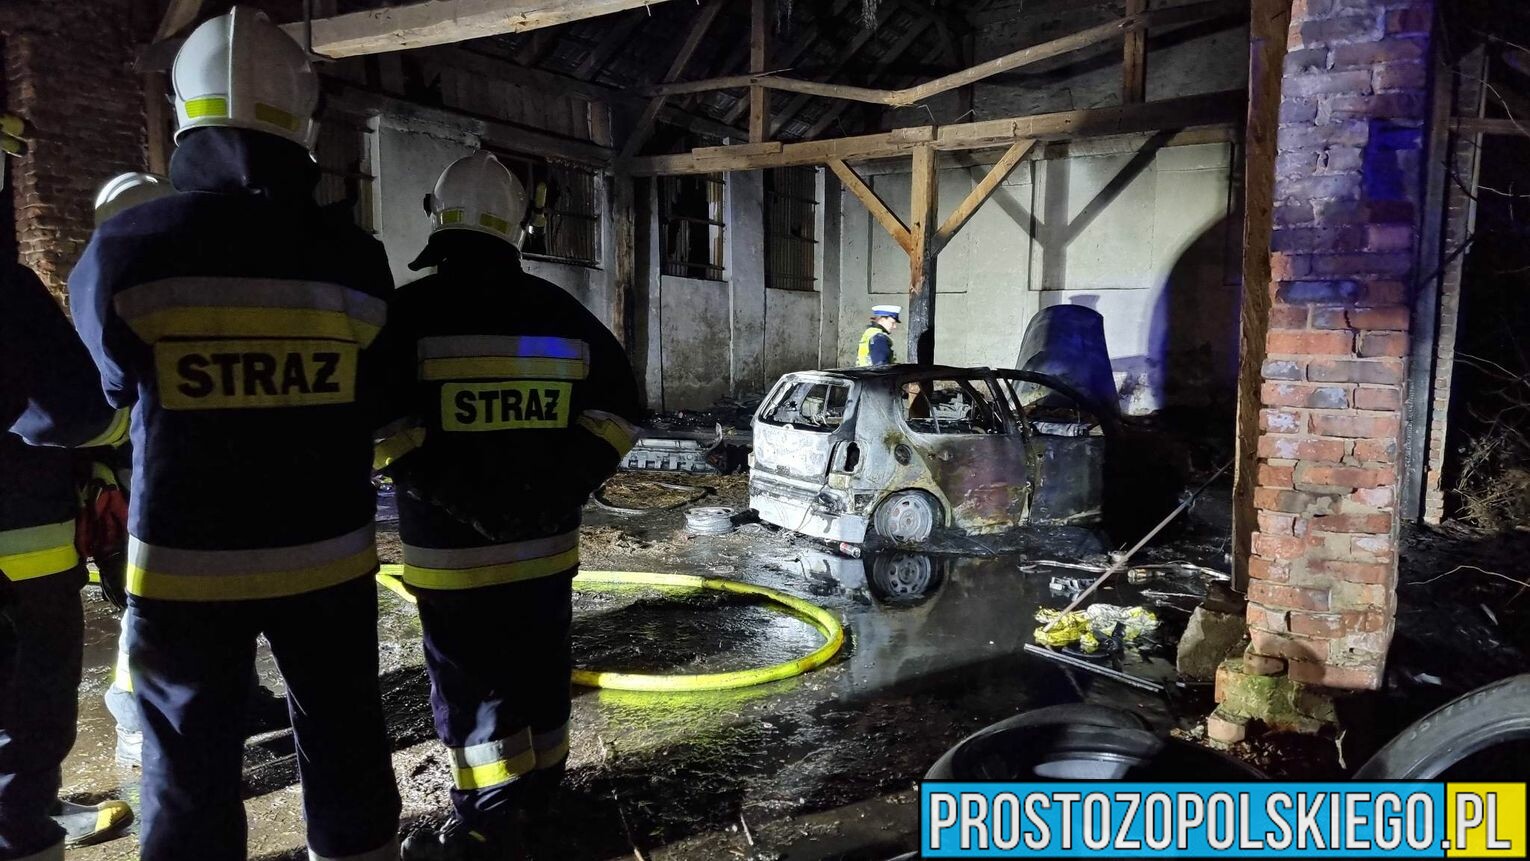 Sprawca potrącenia 3 osób z Koźla podpalił swoje auto w Cisku, zacierając ślady zdarzenia . Policjanci ustalają wszystkie okoliczności.